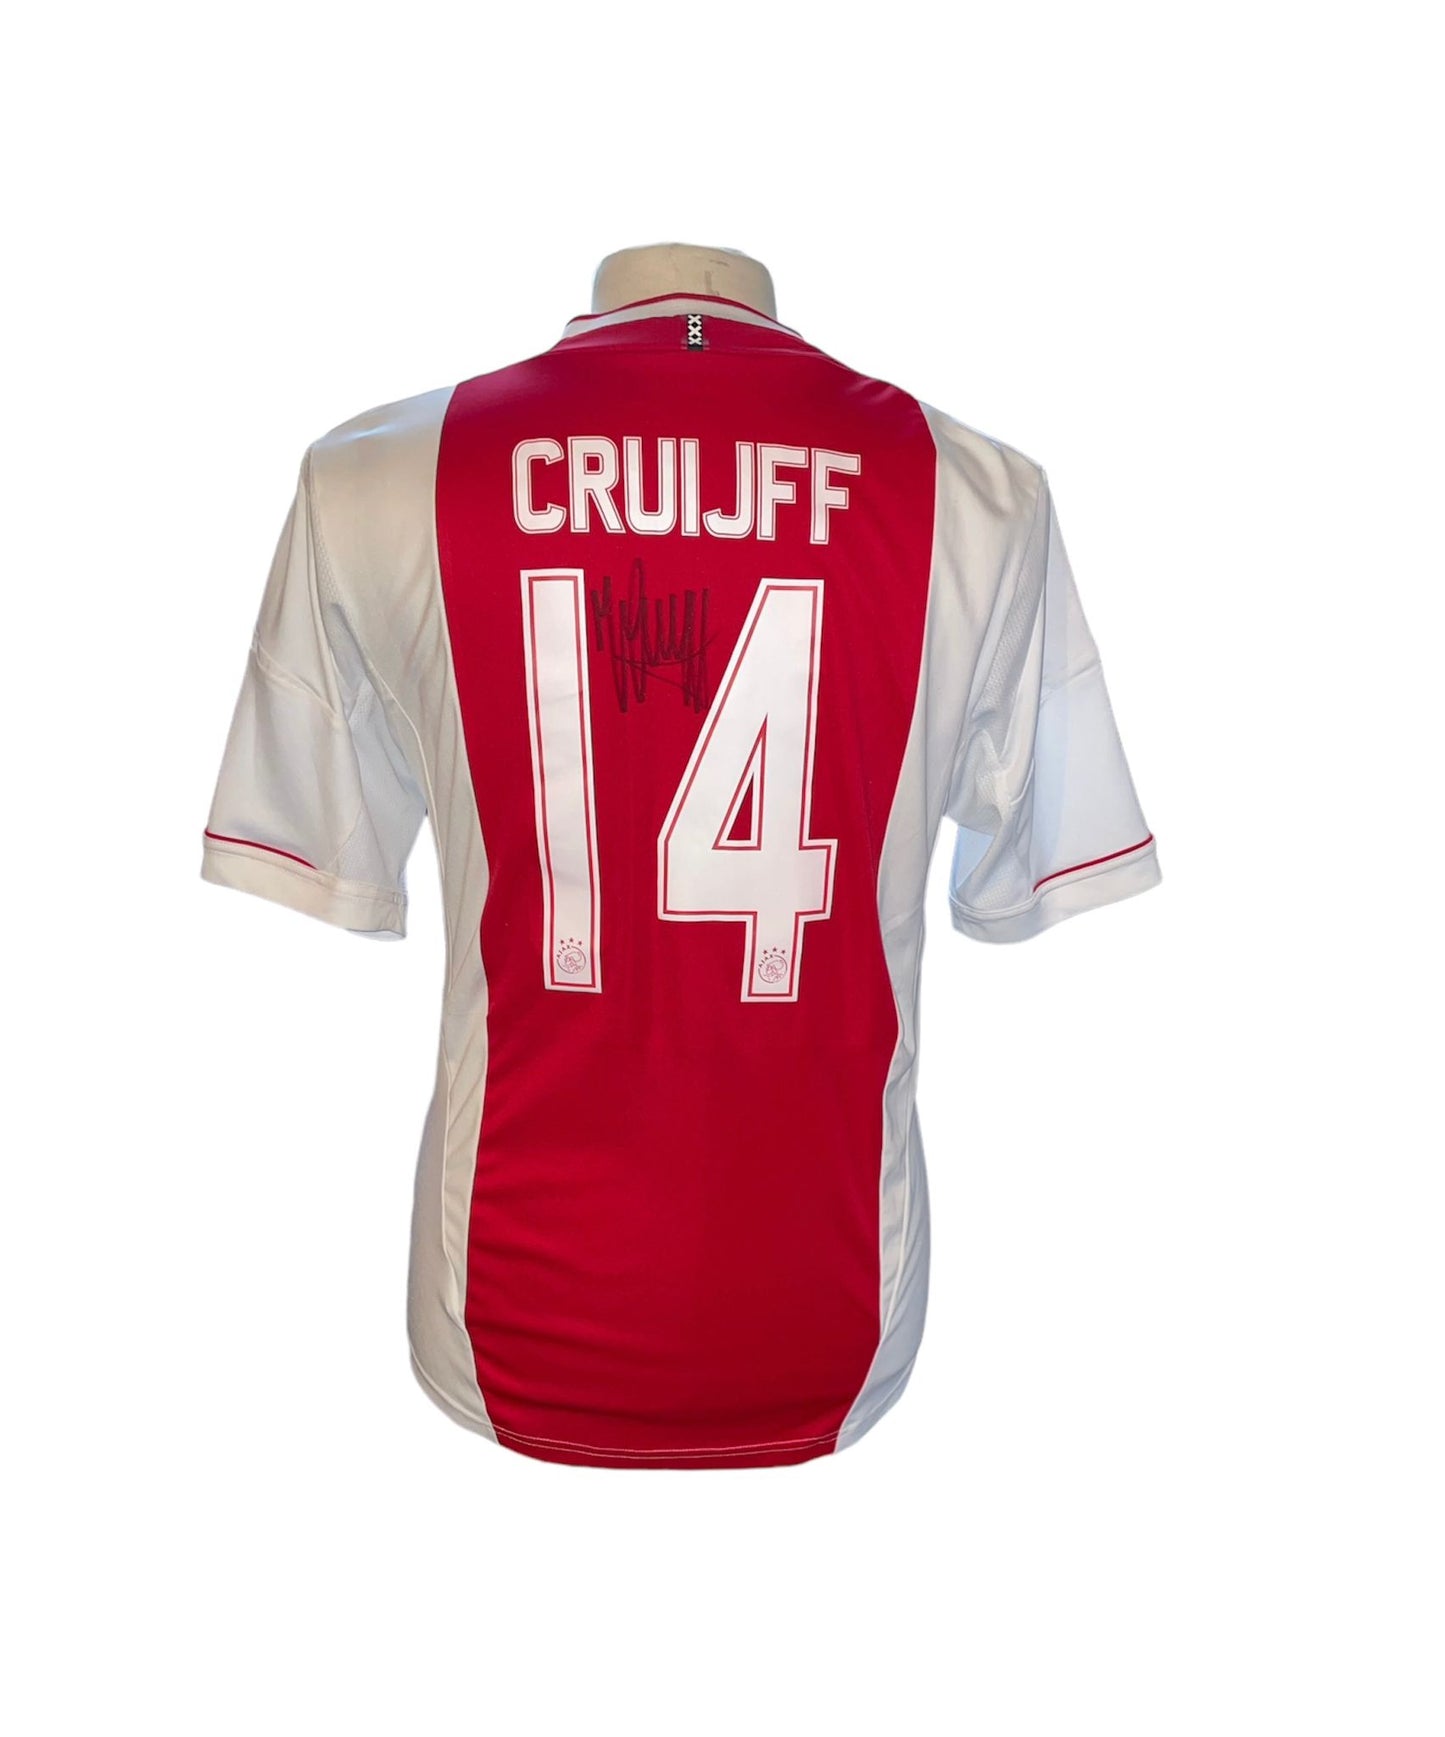 Johan Cruijff gesigneerd Ajax 2012-2013 shirt met certificaat